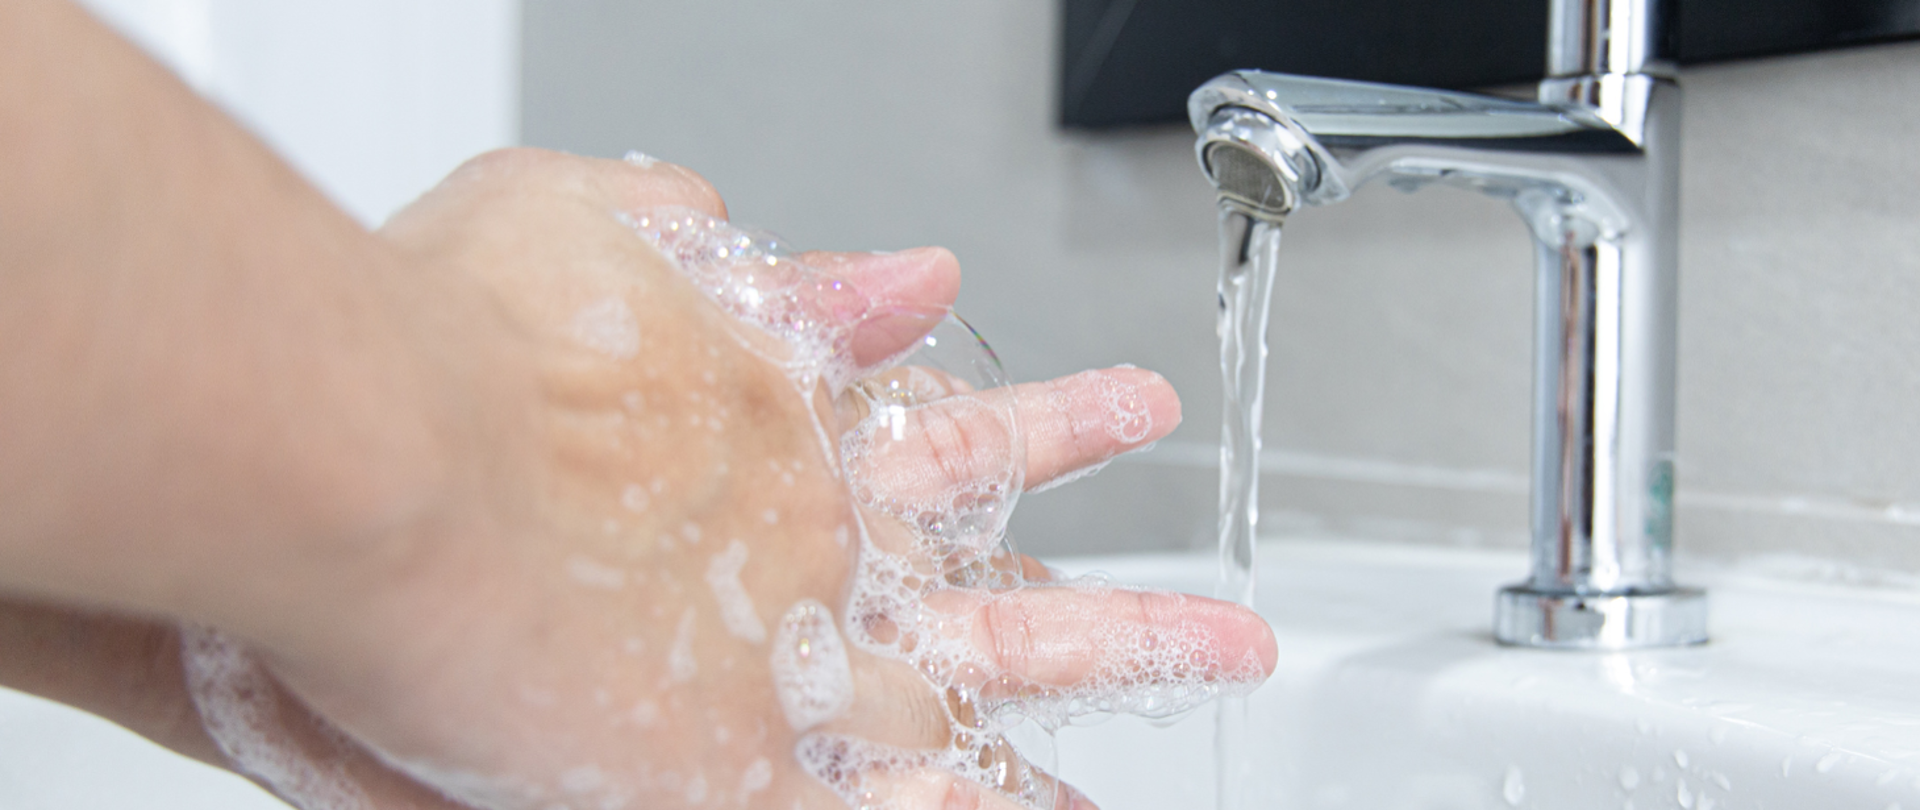 Plakat przedstawiający namydlone dłonie nad umywalką z odkręconą wodą